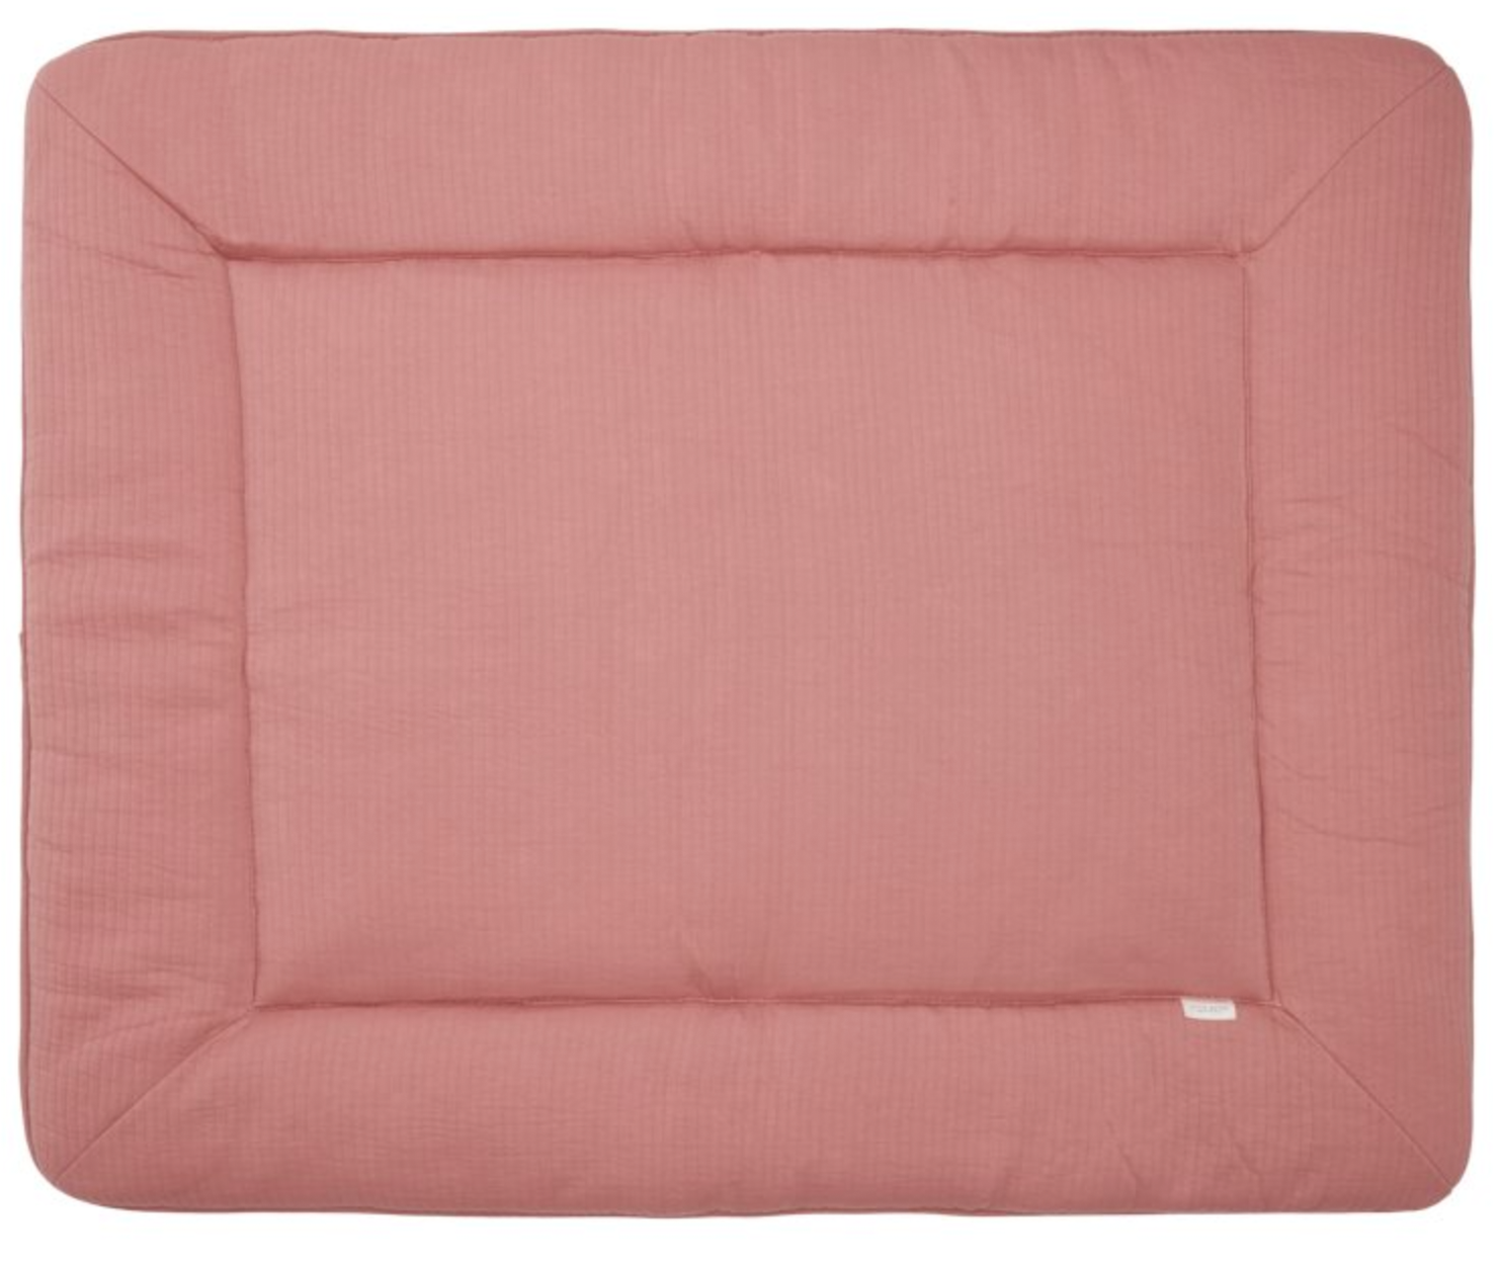 Laufgittereinlage Krabbeldecke Pure pink blush (80x100 cm)